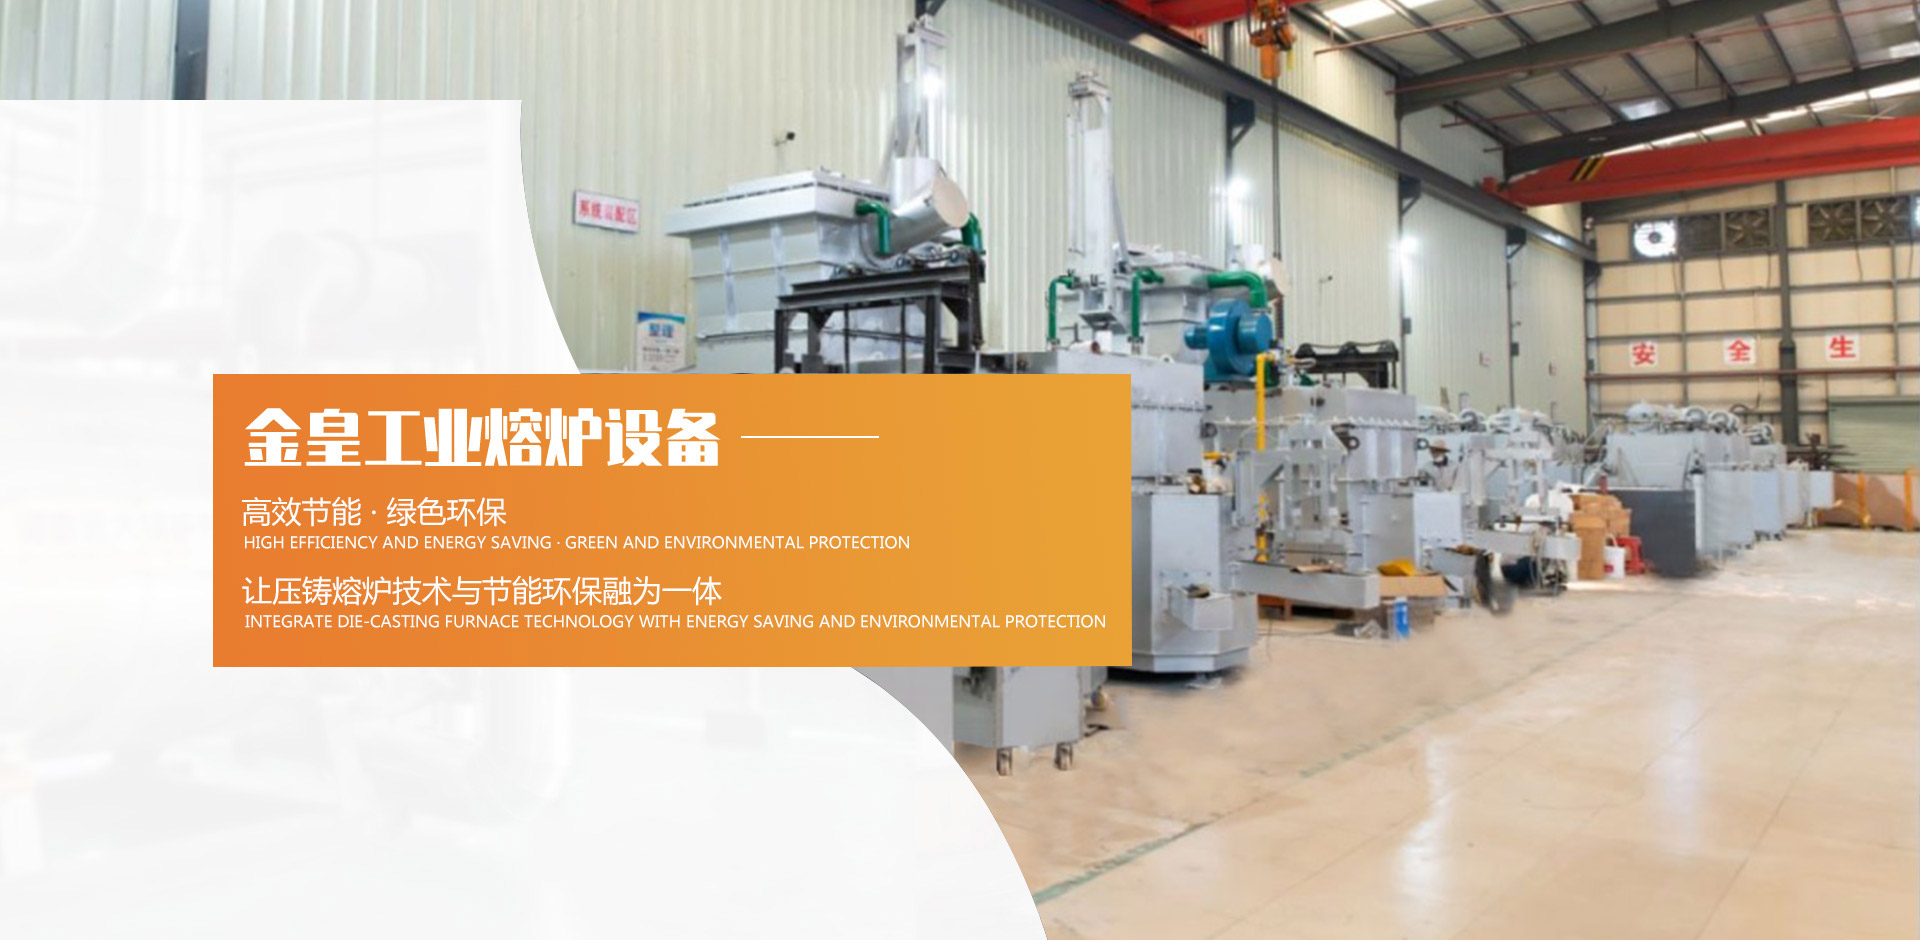 东莞金皇工业熔炉设备制造有限公司